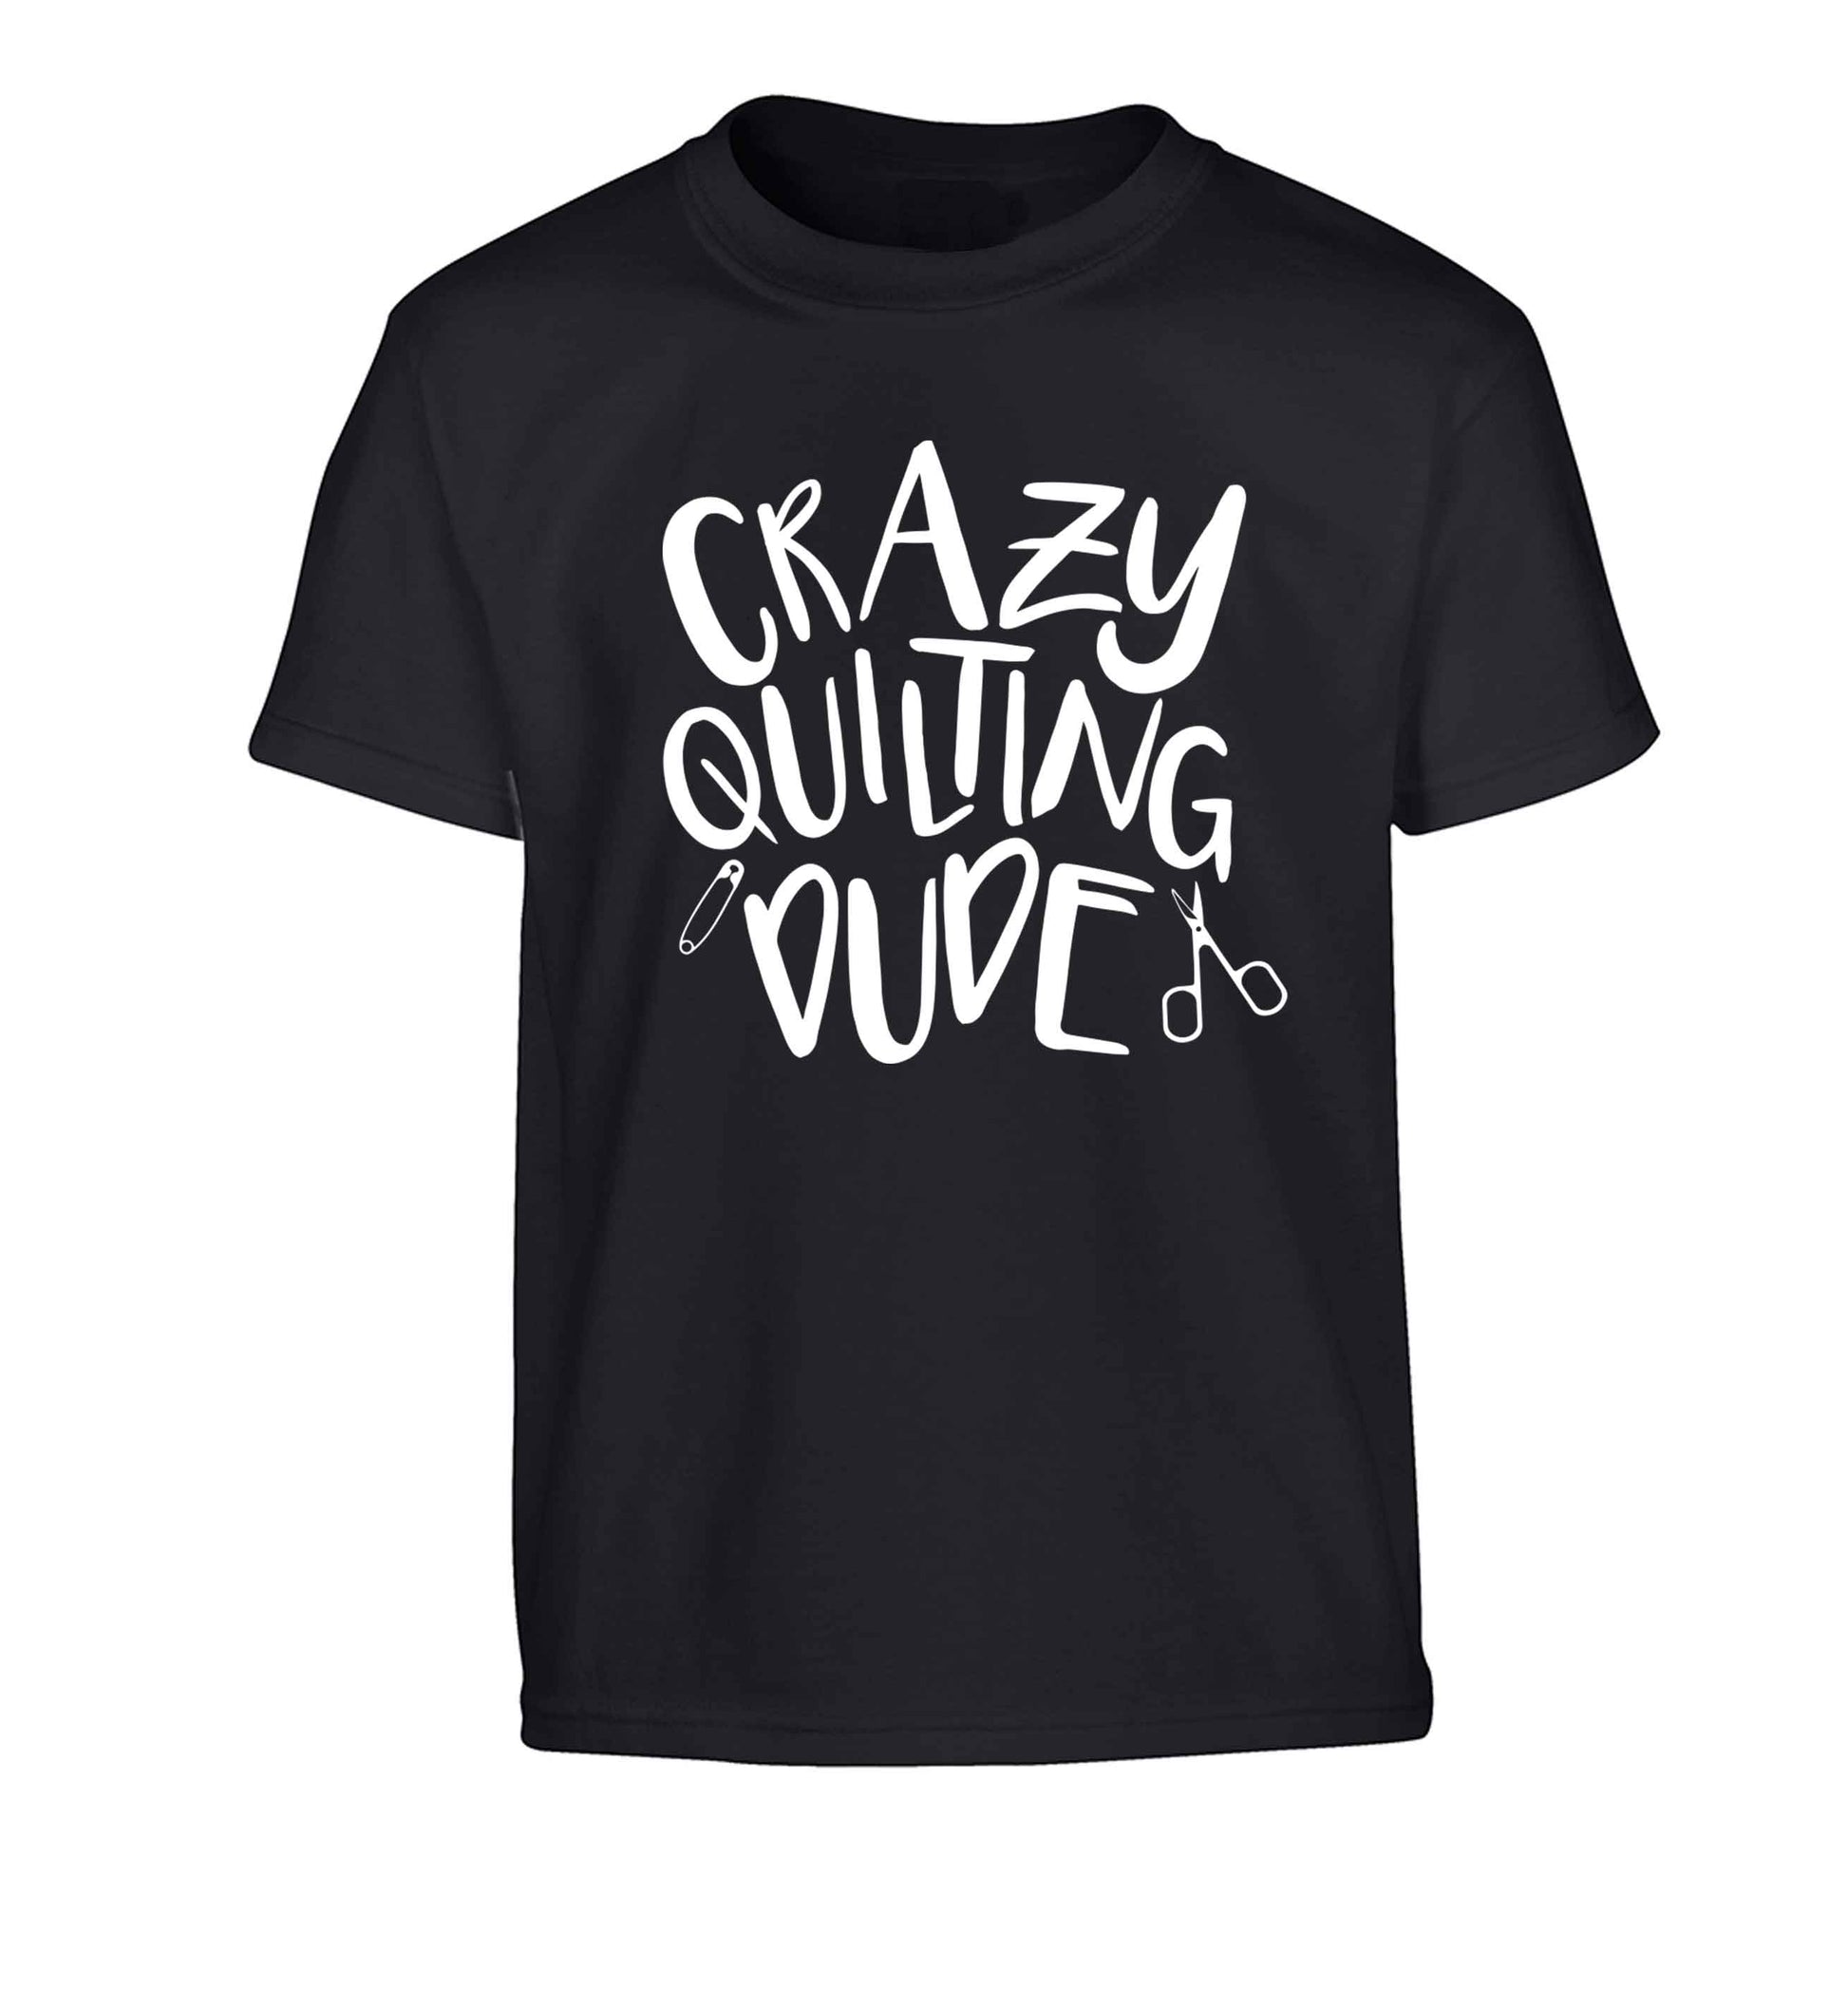 Crazy quilting dude Children's black Tshirt 12-13 Years